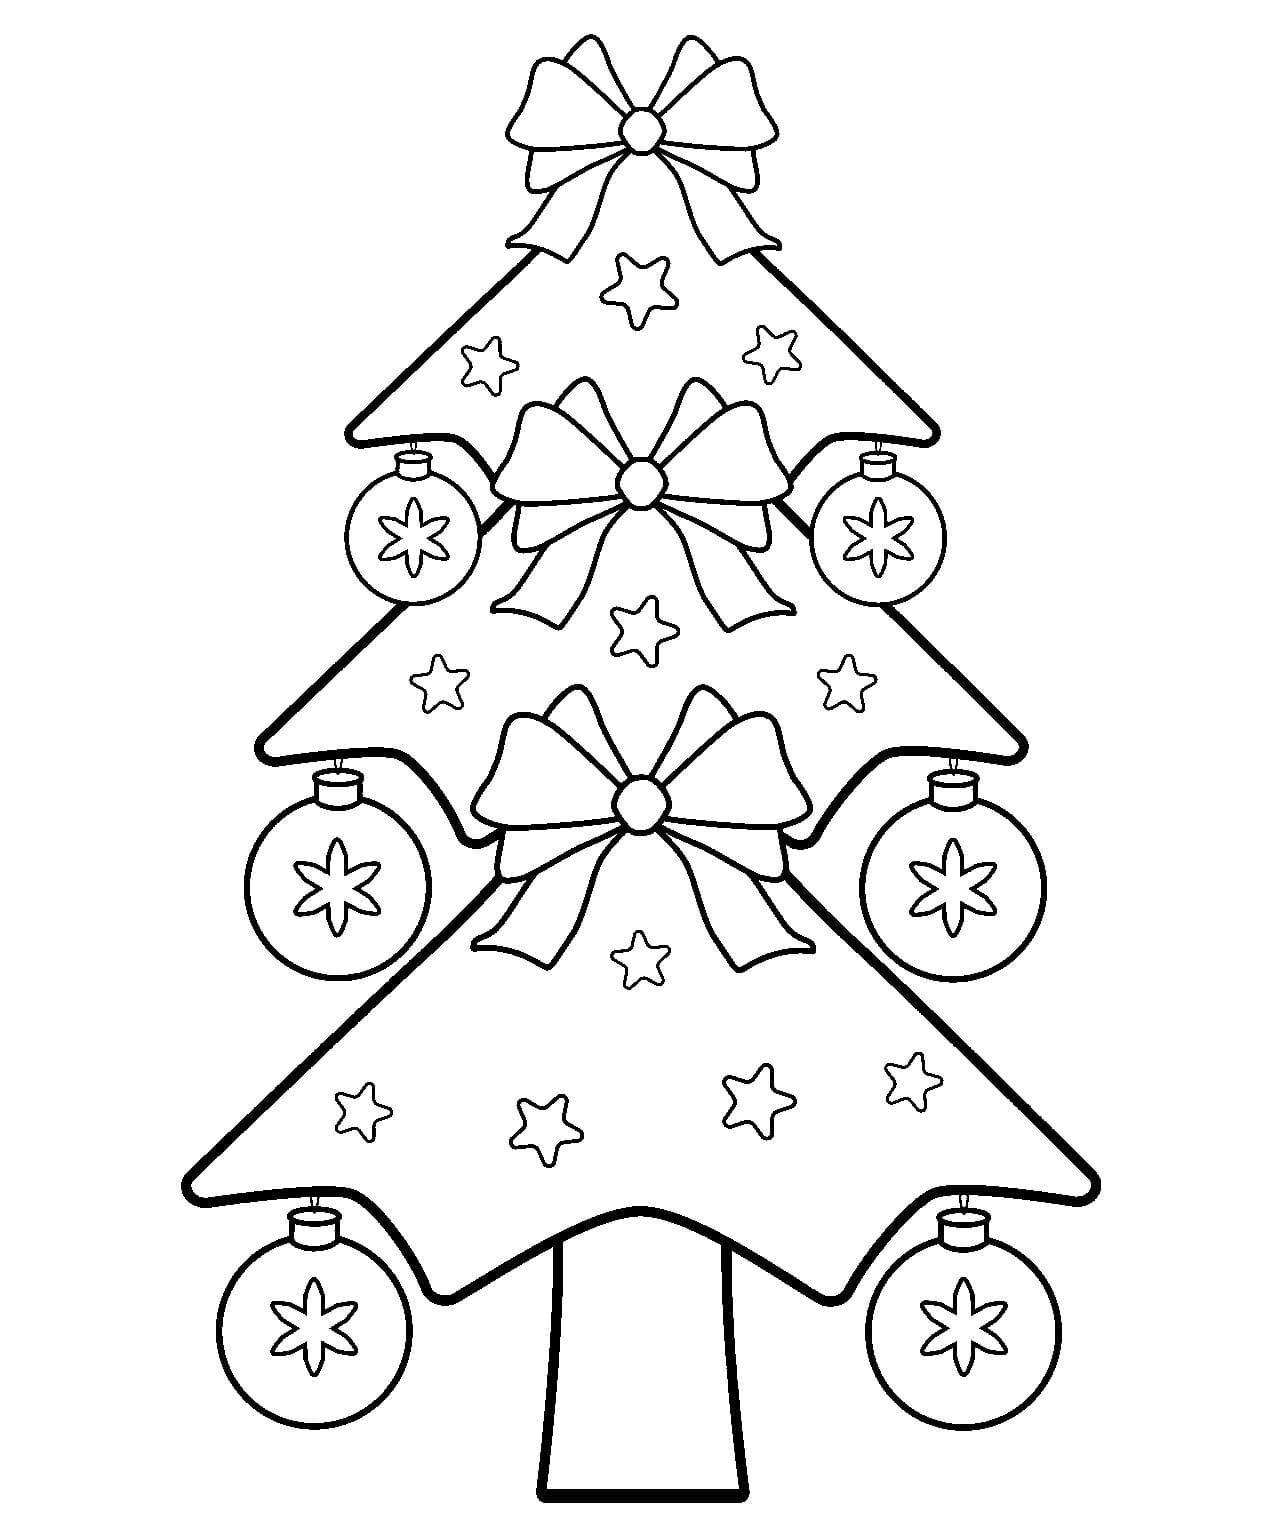 раскраска новогодняя елка картинка для детей распечатать бесплатно